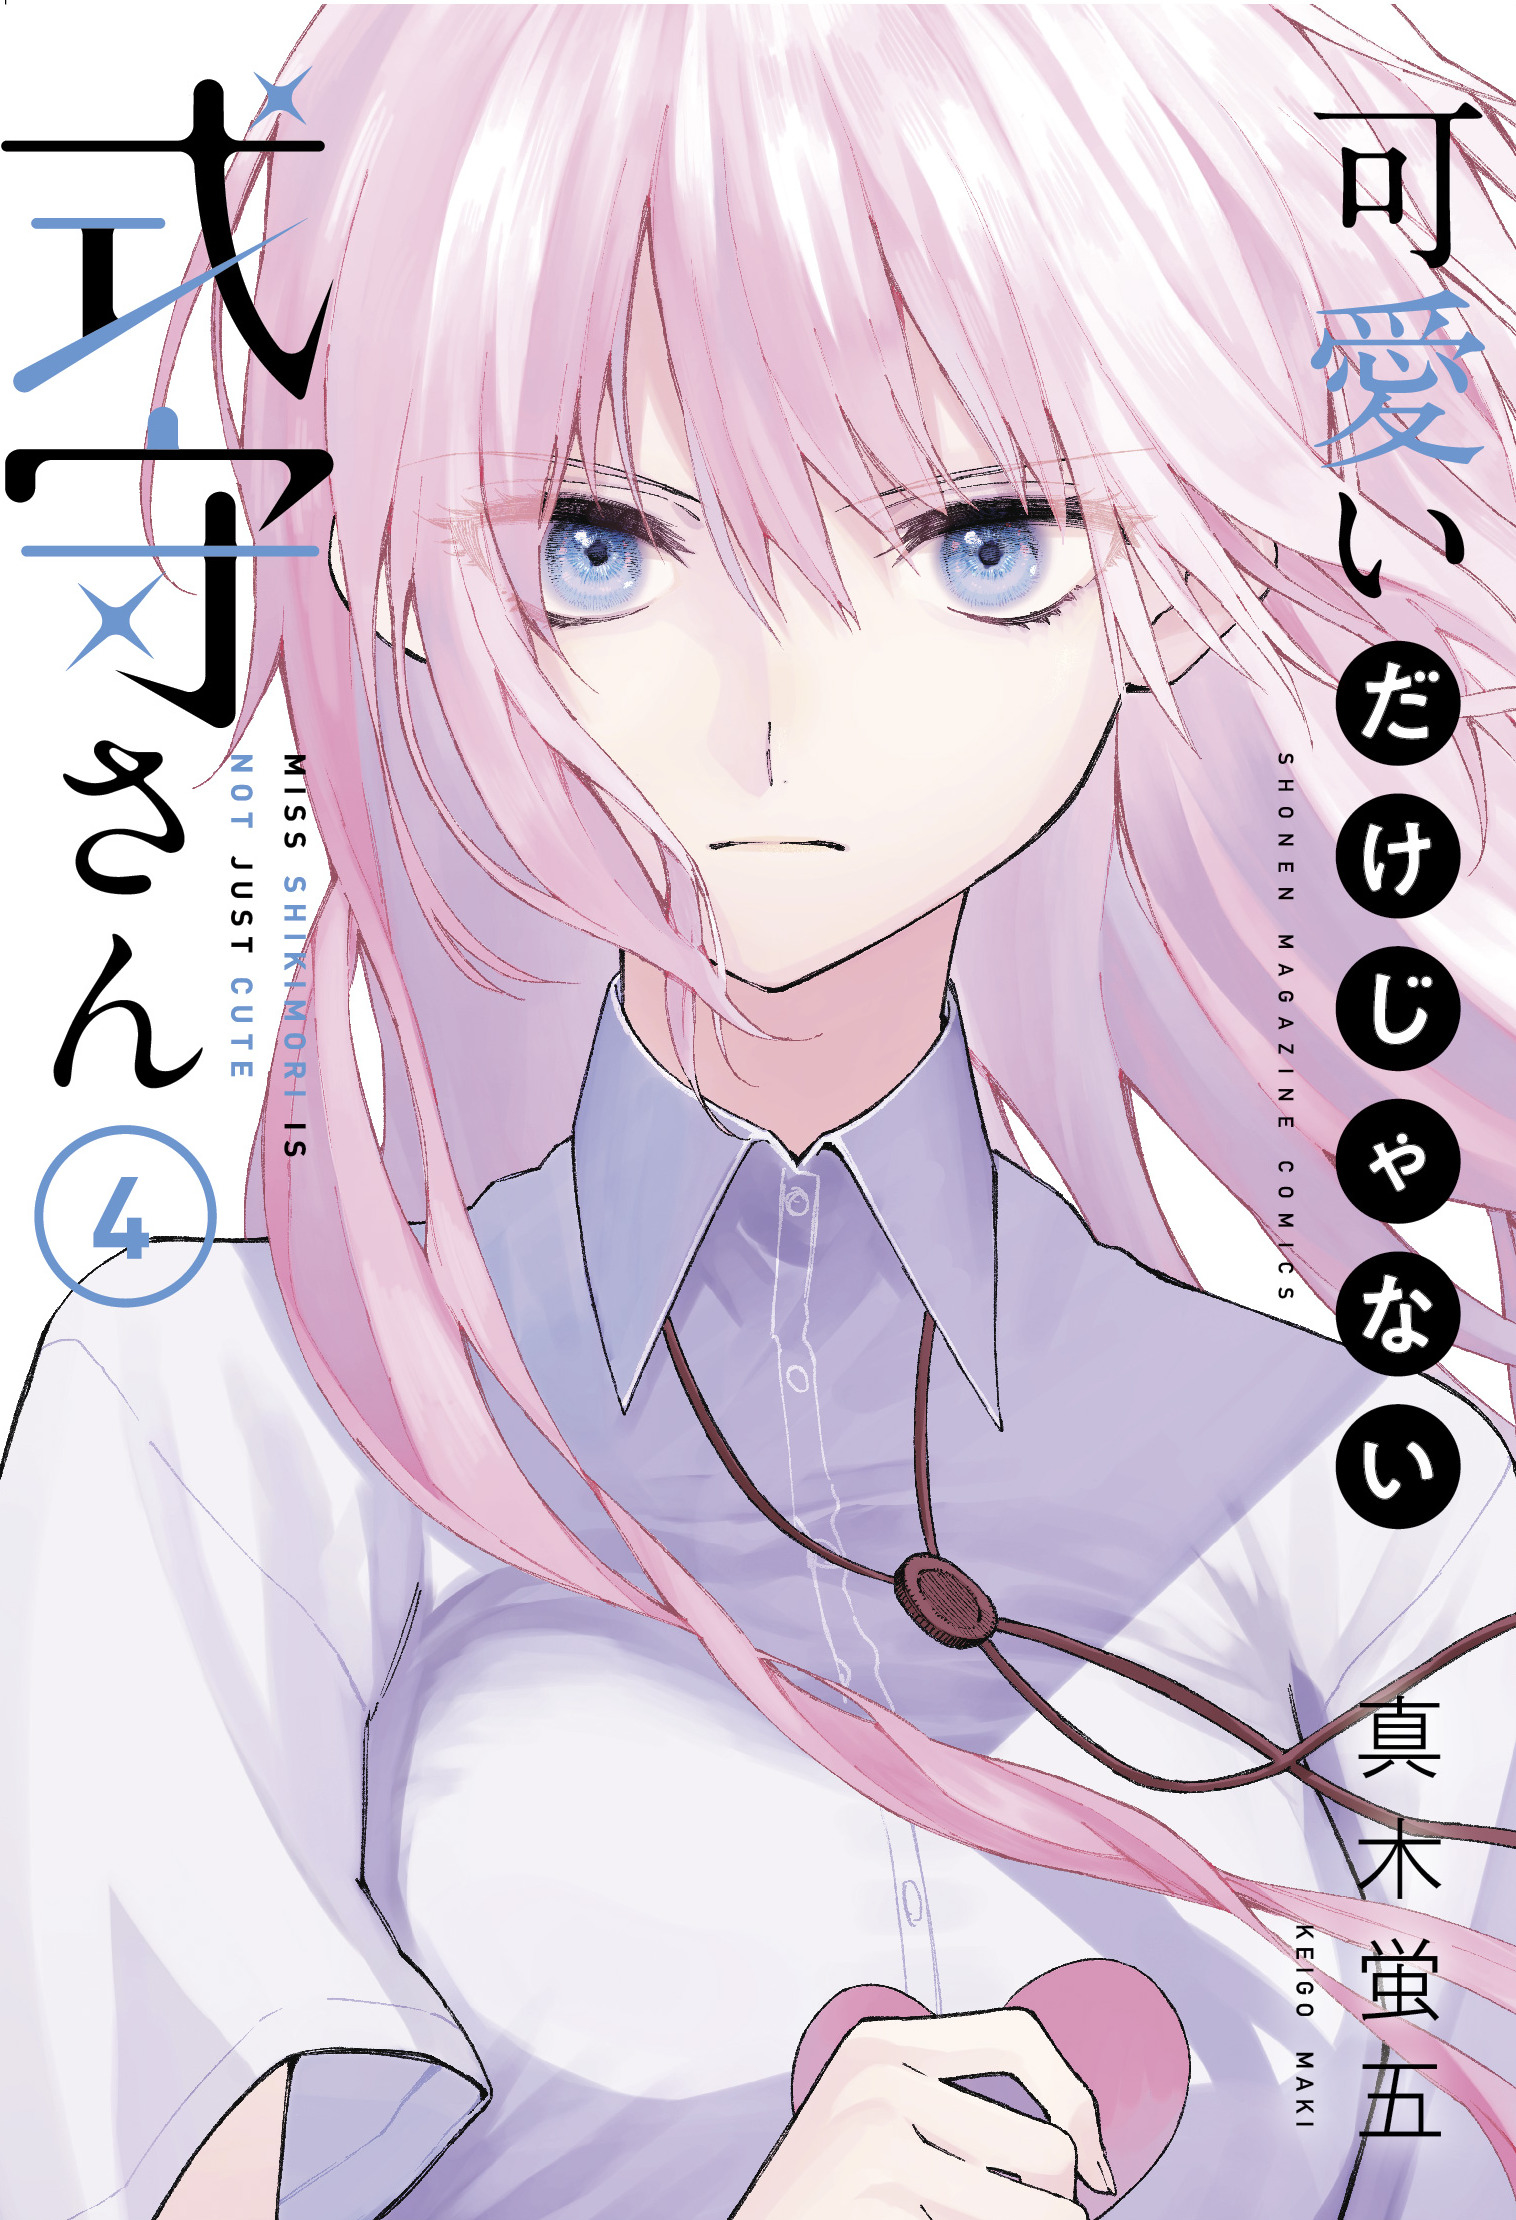 Shikimori's Not Just a Cutie Manga Volume 4